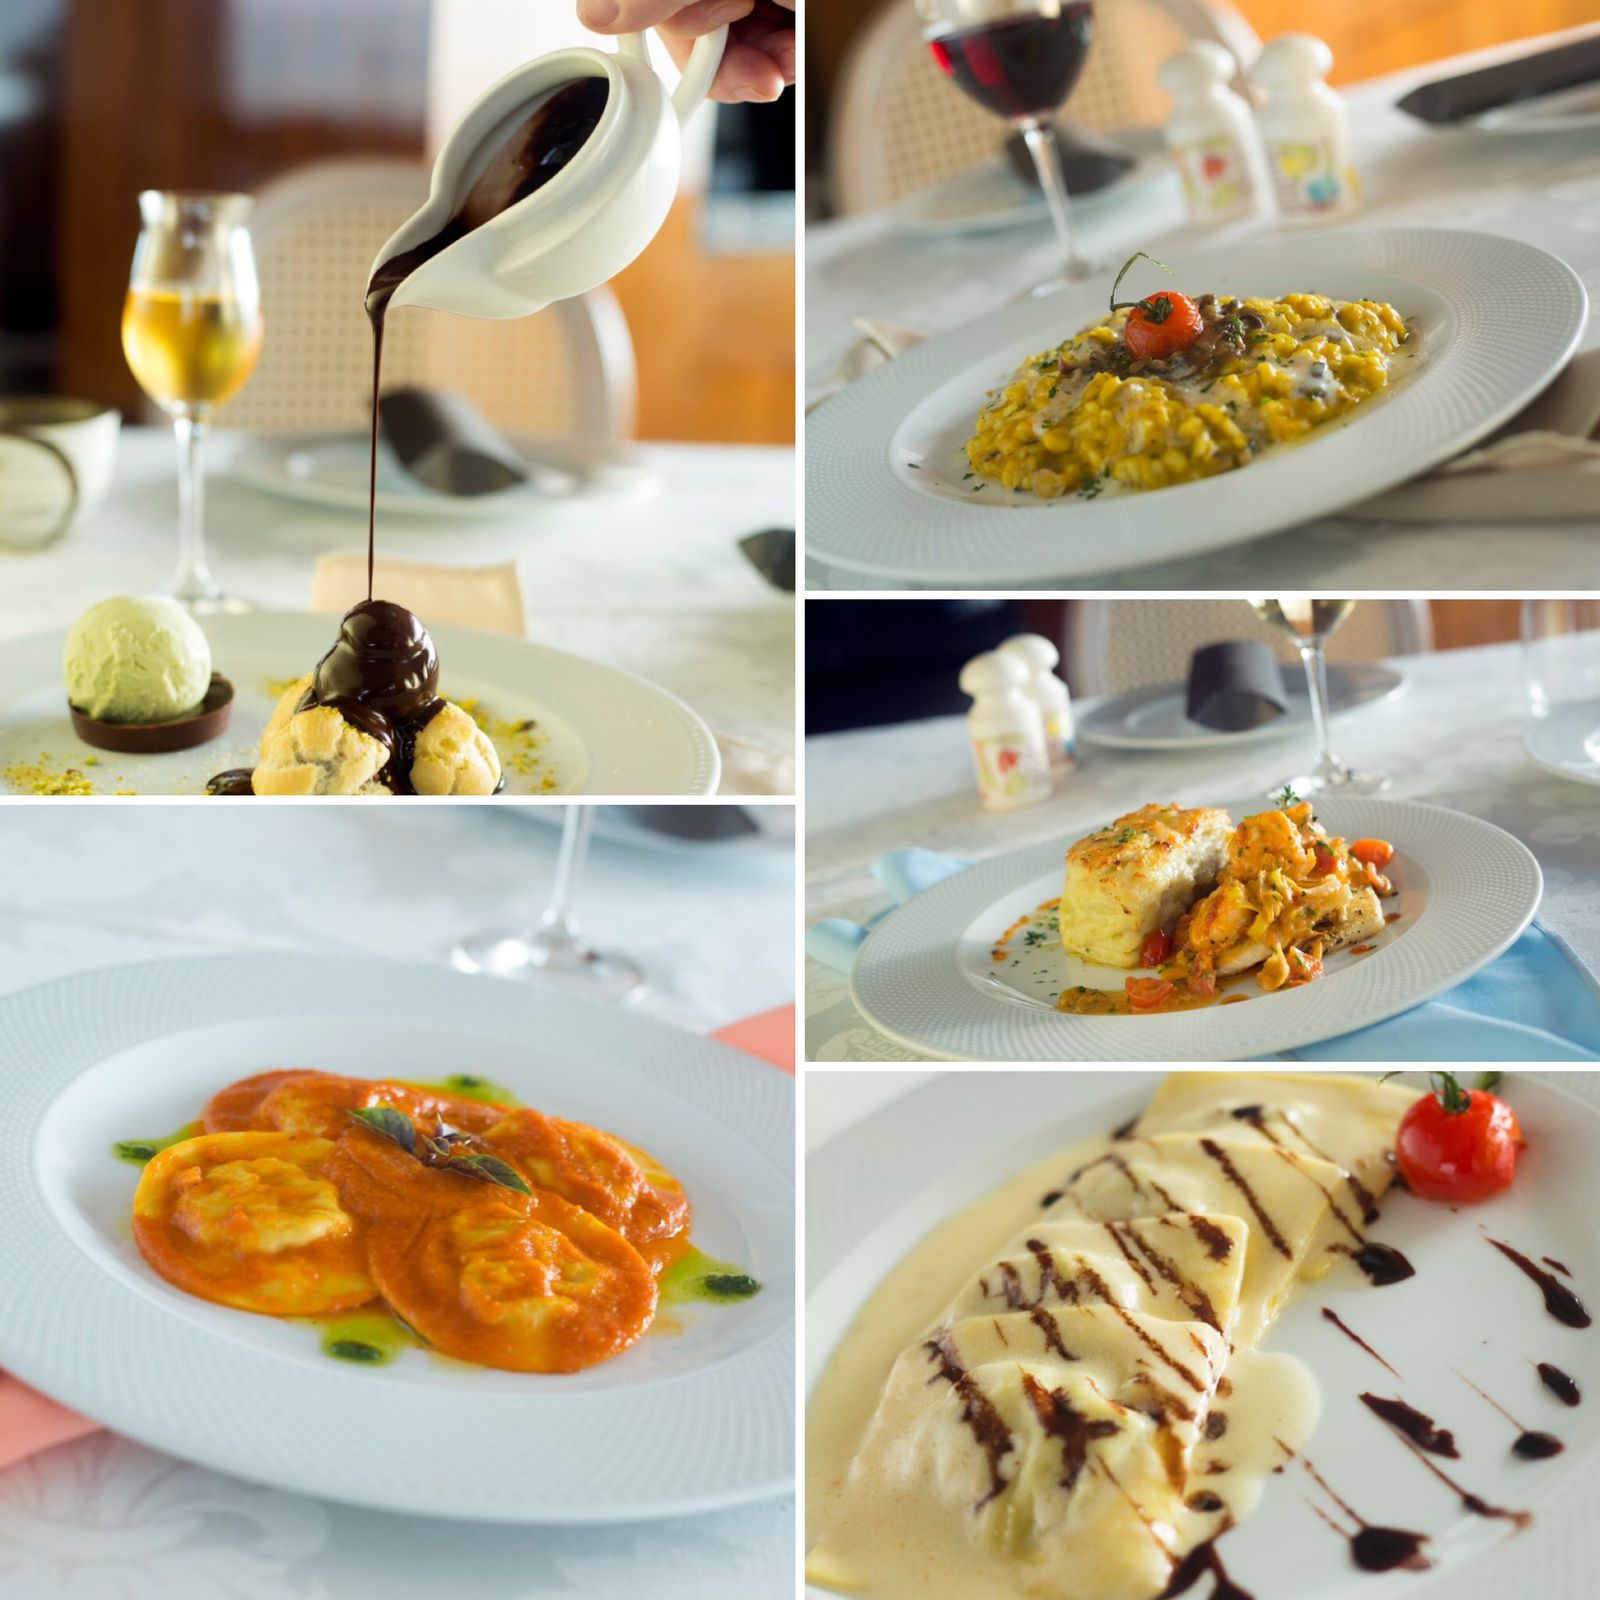 Restaurante Terraço Itália lança novas receitas no menu - - cardapio terraço italia